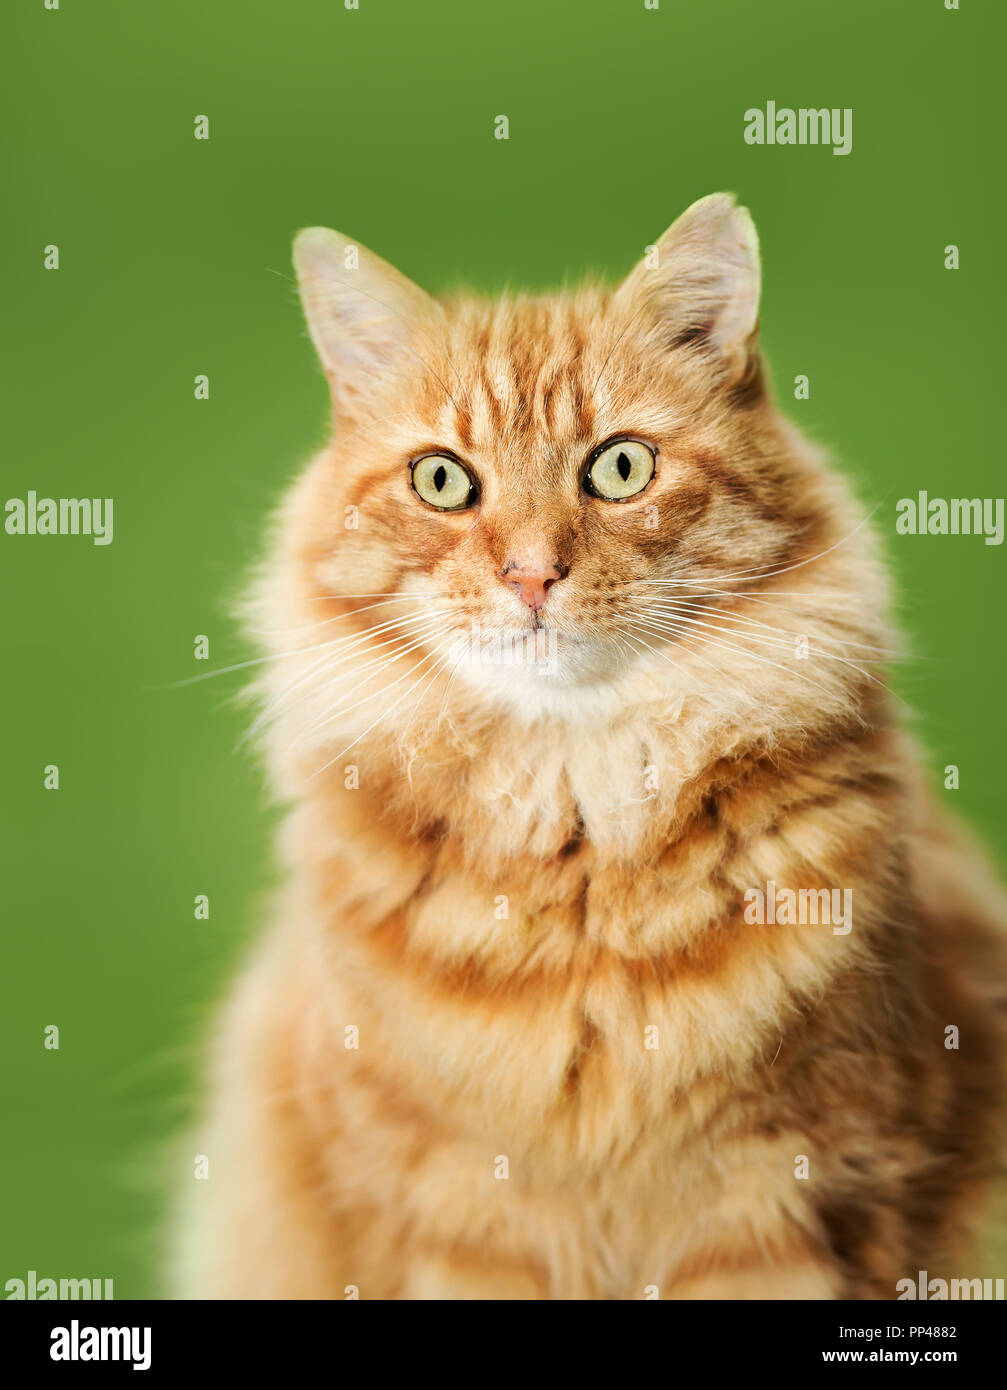 Cerca de un gato jengibre contra el fondo verde. Foto de stock